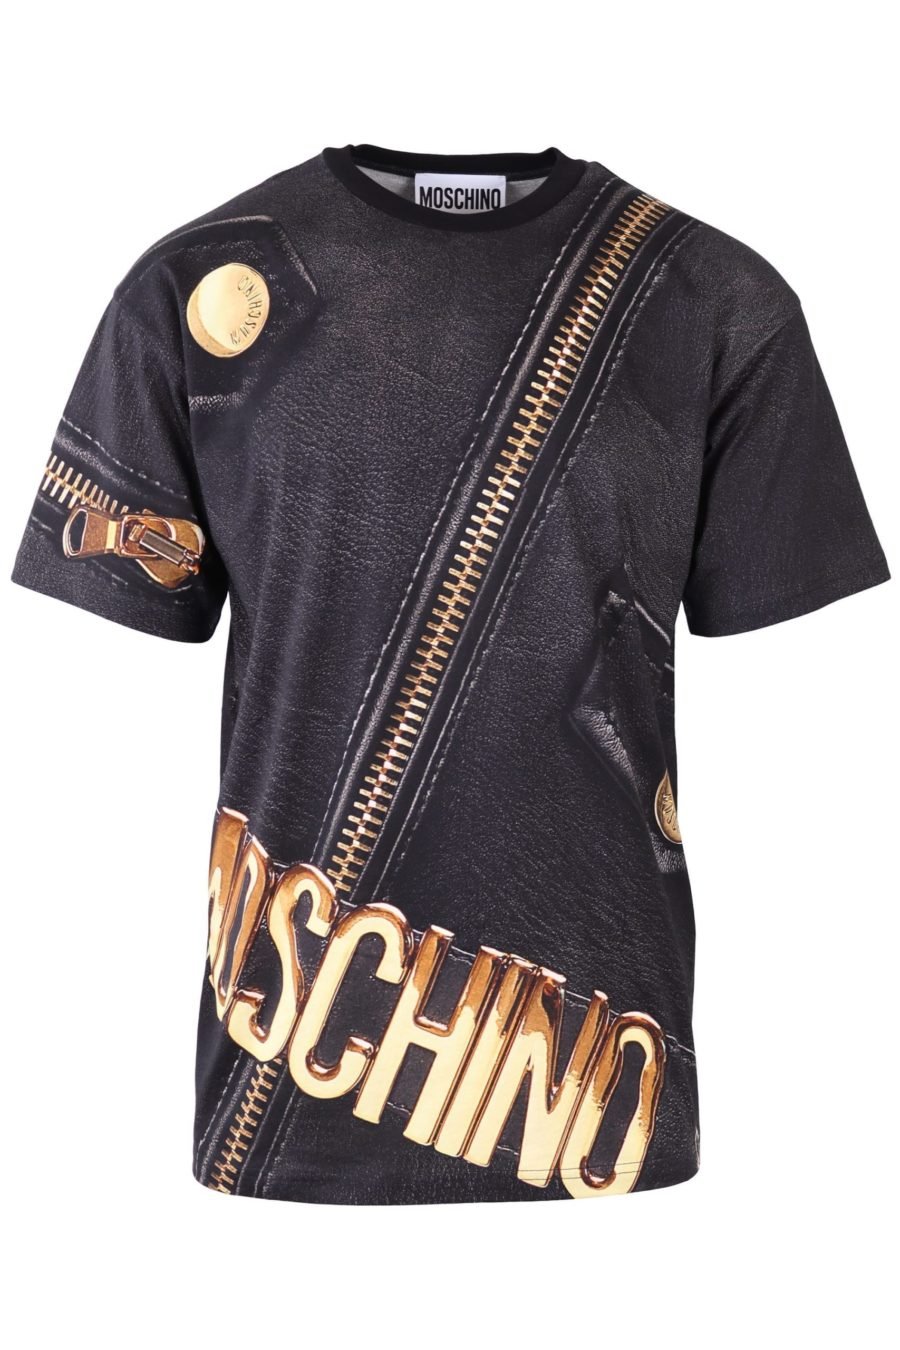 T-shirt Moschino Couture noir avec fermeture éclair dorée - IMG 6513 à l'échelle